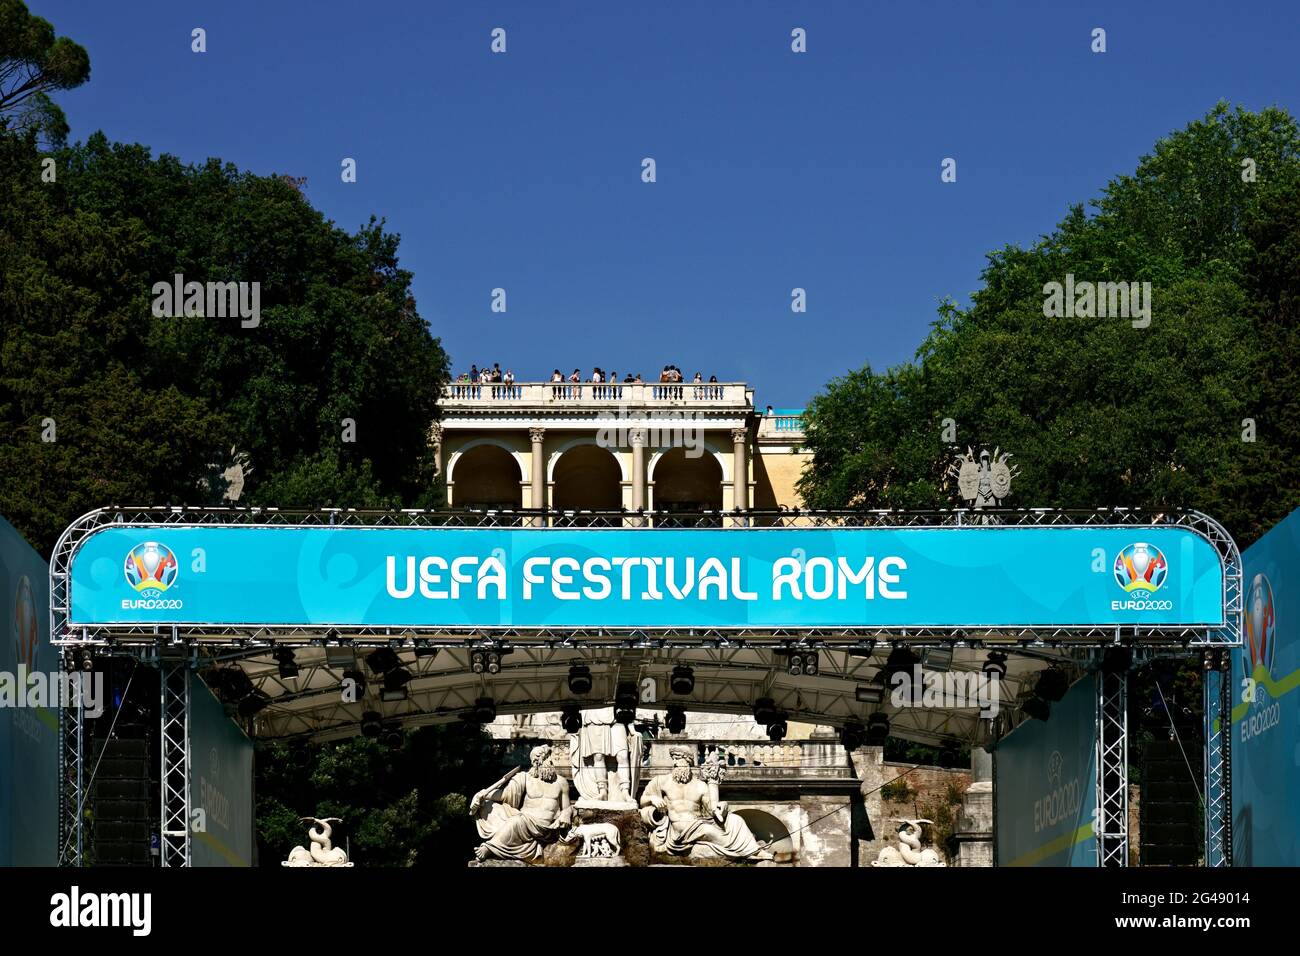 UEFA Champions League Euro 2020, Campionati europei di calcio. Fan zone Football Village in Piazza del Popolo. Roma, Italia, Europa. 2021 Foto Stock